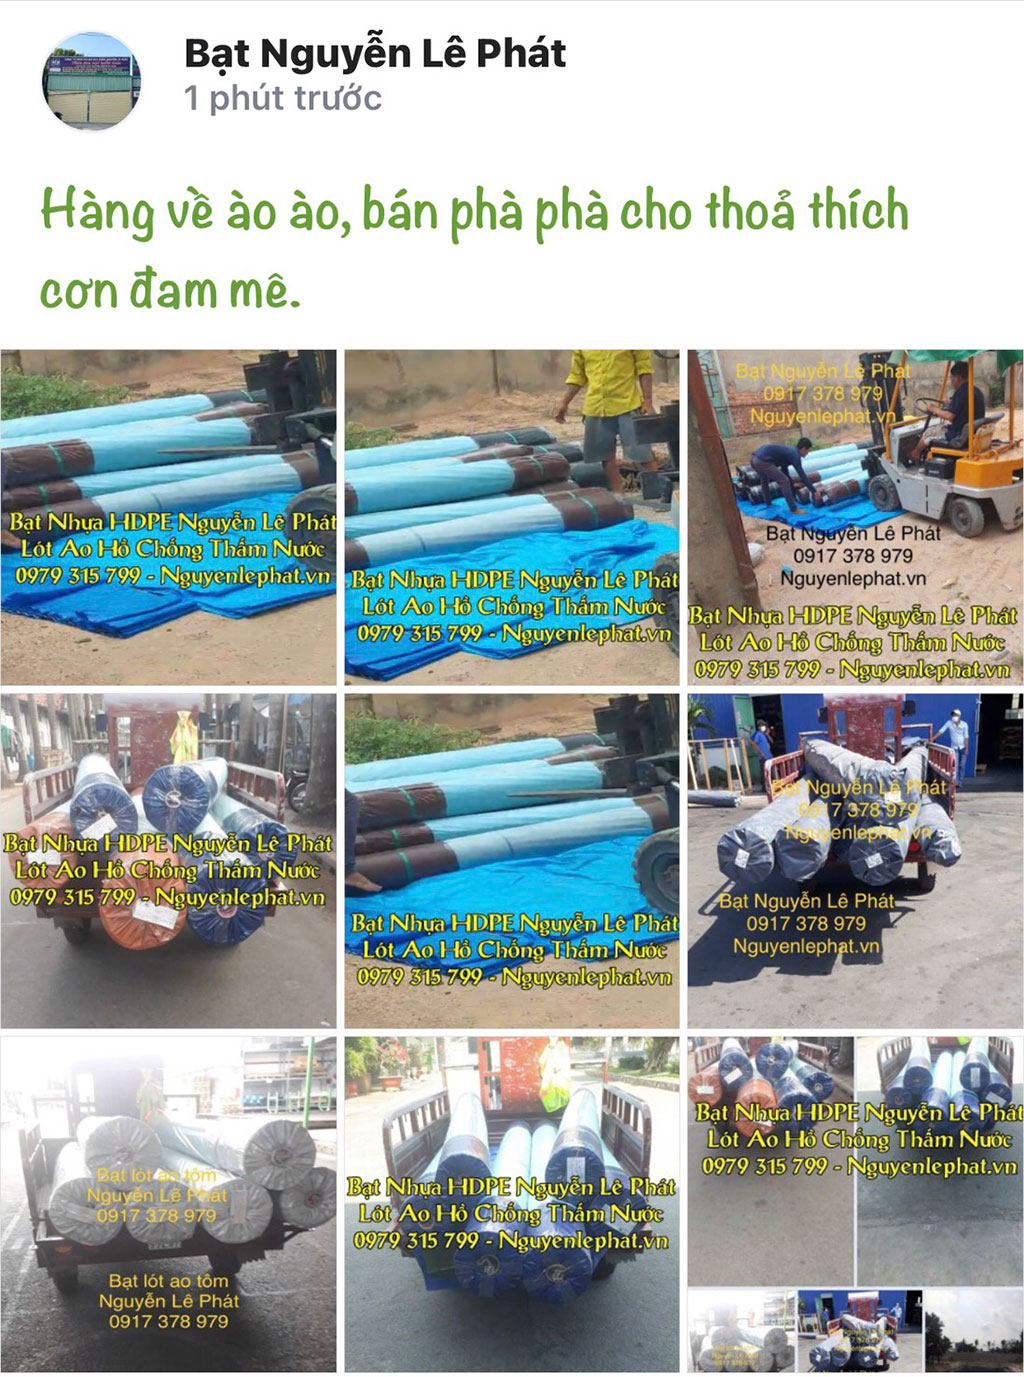 Kho xưởng bạt nhựa hdpe Nguyễn Lê Phát